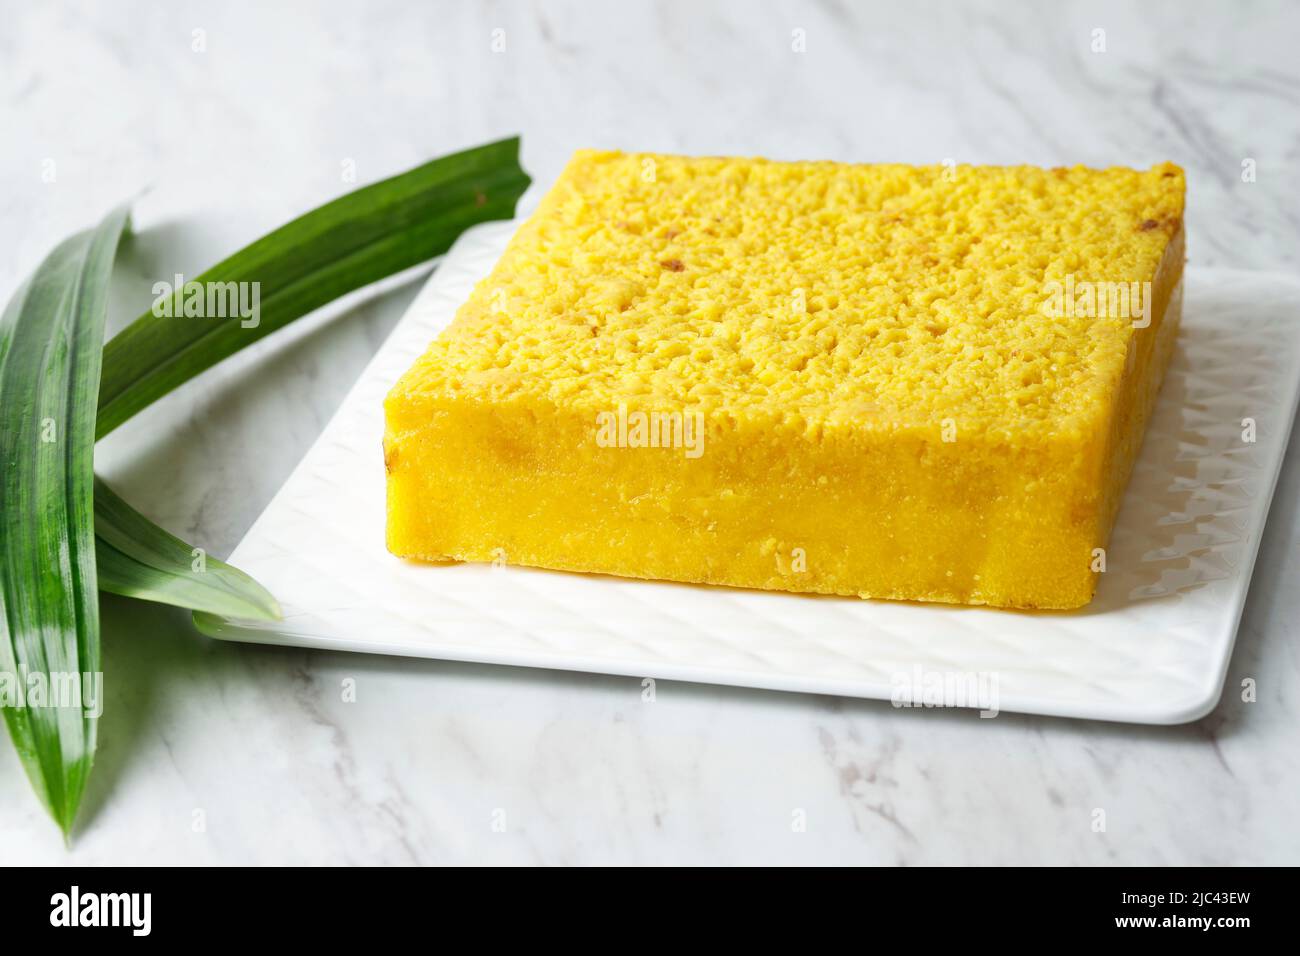 Bika Ambon, gâteau de miel jaune carré complet, populaire auprès de Medan, Indonésie. La couleur jaune provient de Curcumin. Concept Oleh oleh Medan sur White Backgro Banque D'Images